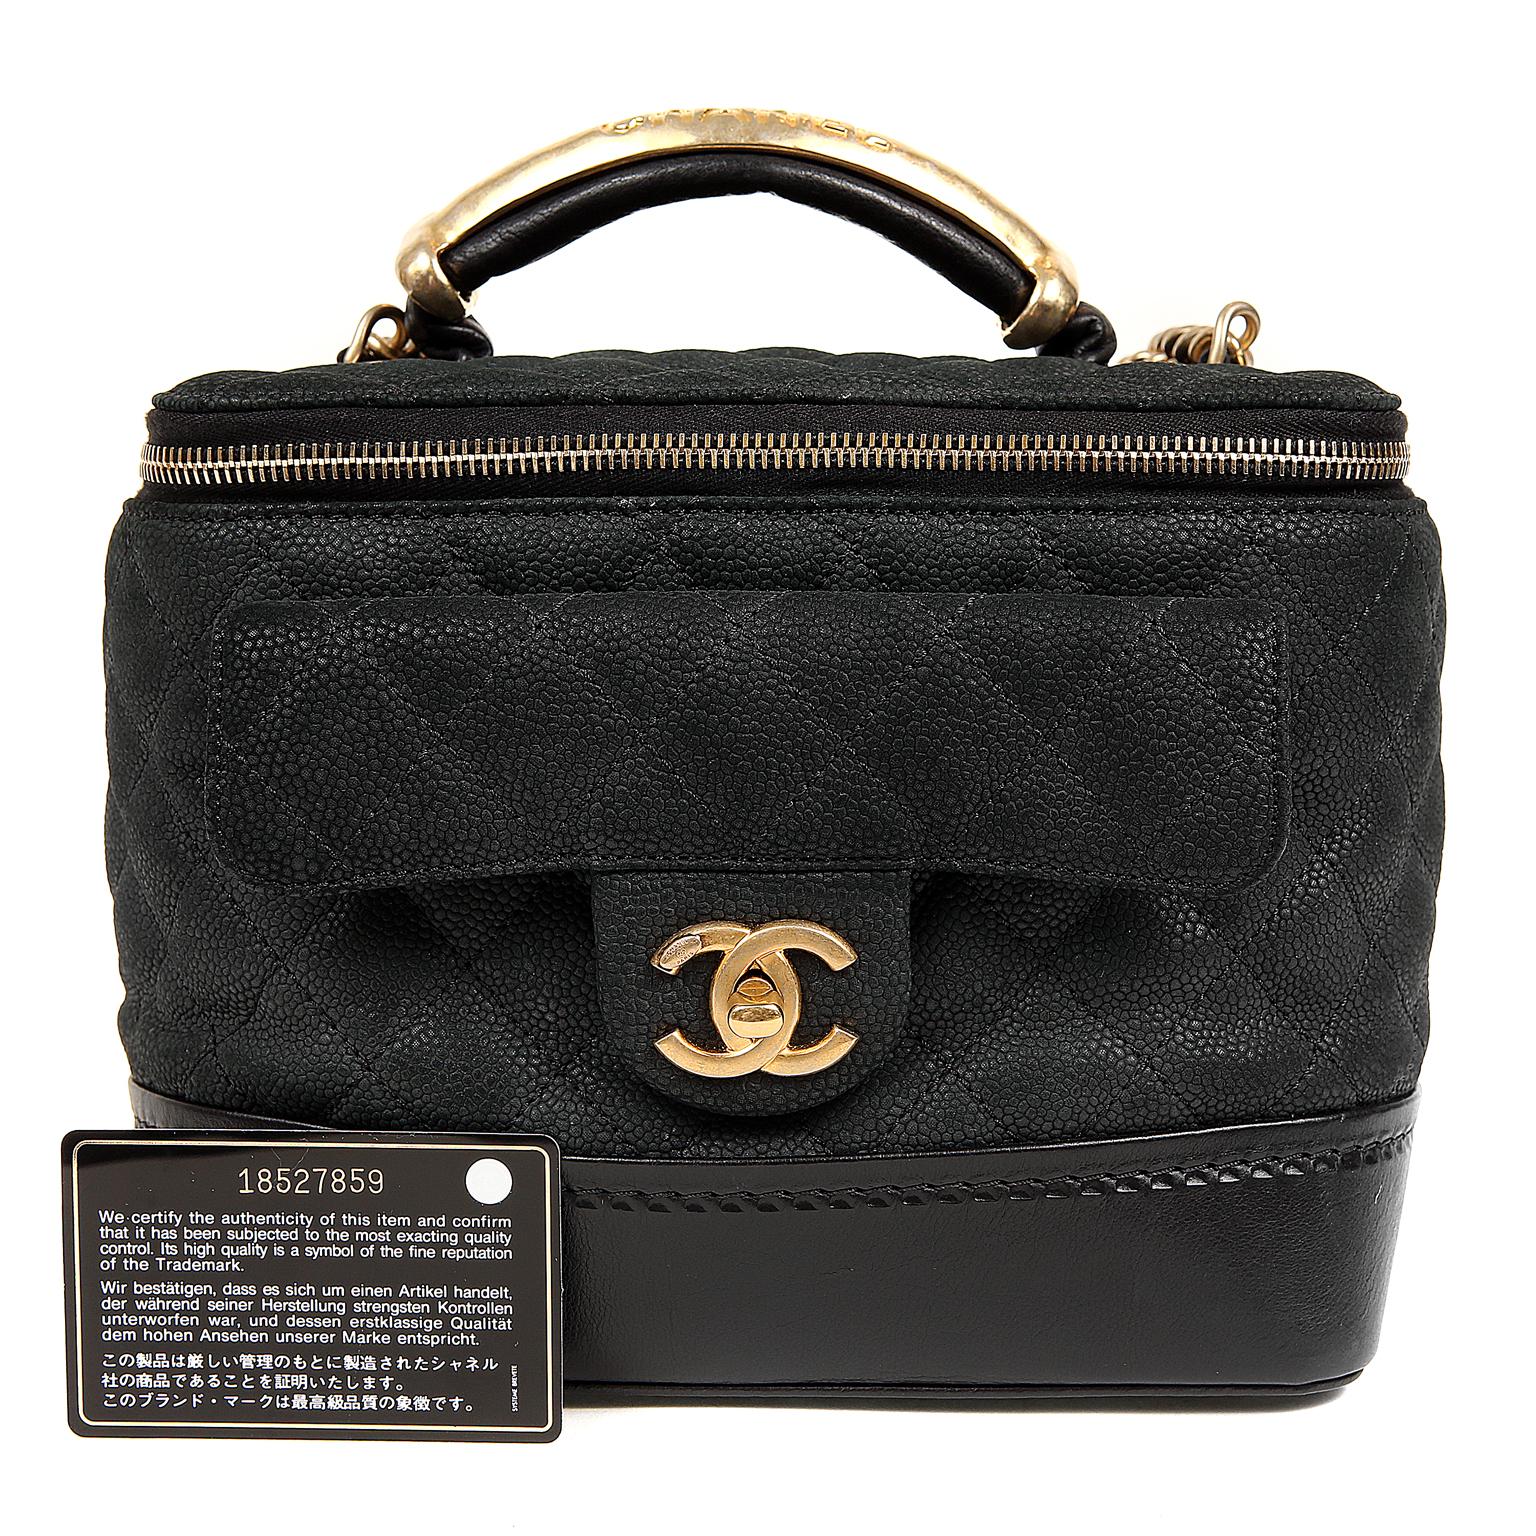 Chanel Black Leather Globetrotter Bag 8